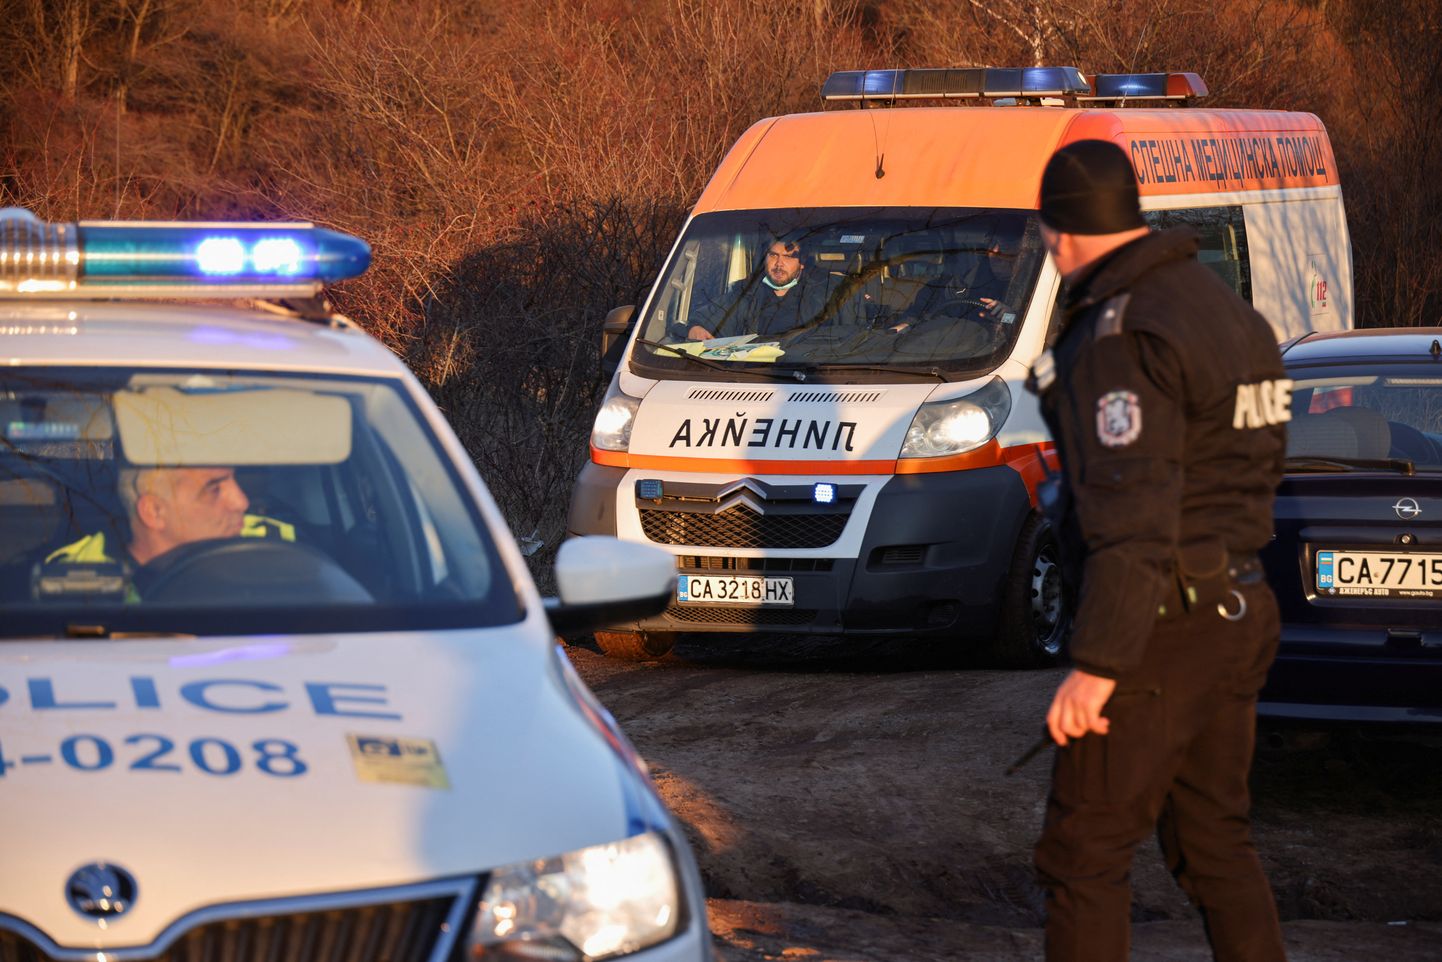 Bulgaaria politsei leidis veoki 17. veebruaril.